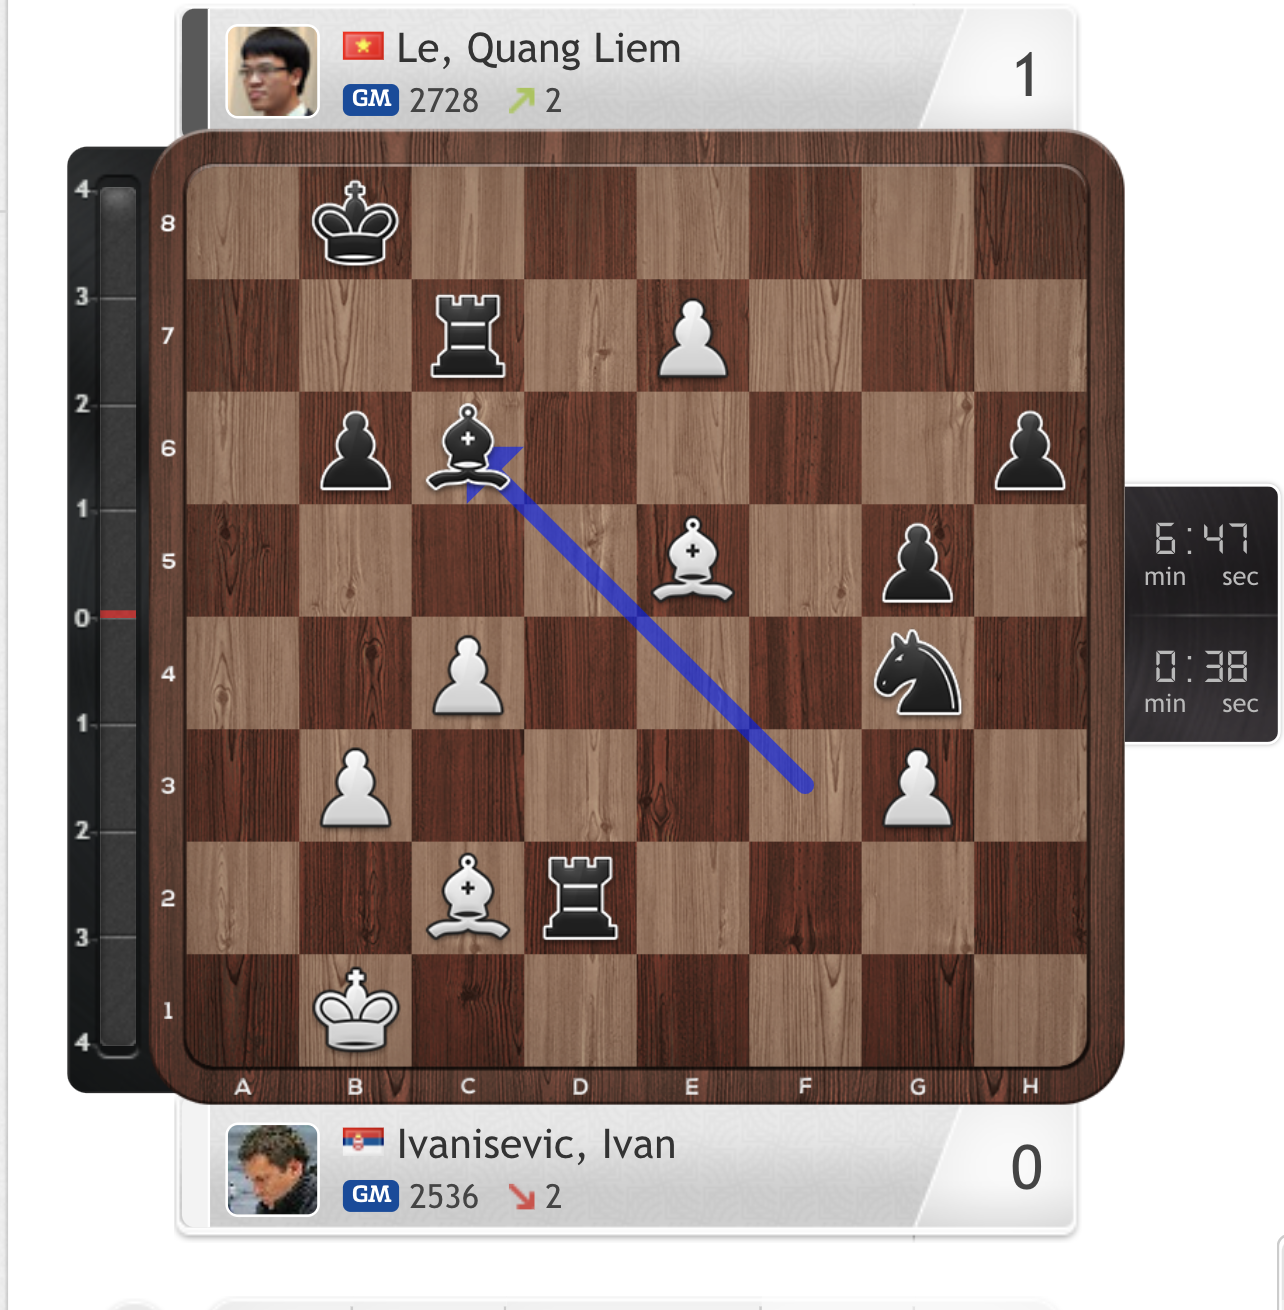 Bùng nổ 2 ván cờ nhanh, Lê Quang Liêm vào vòng ba World Cup cờ vua - Ảnh 3.